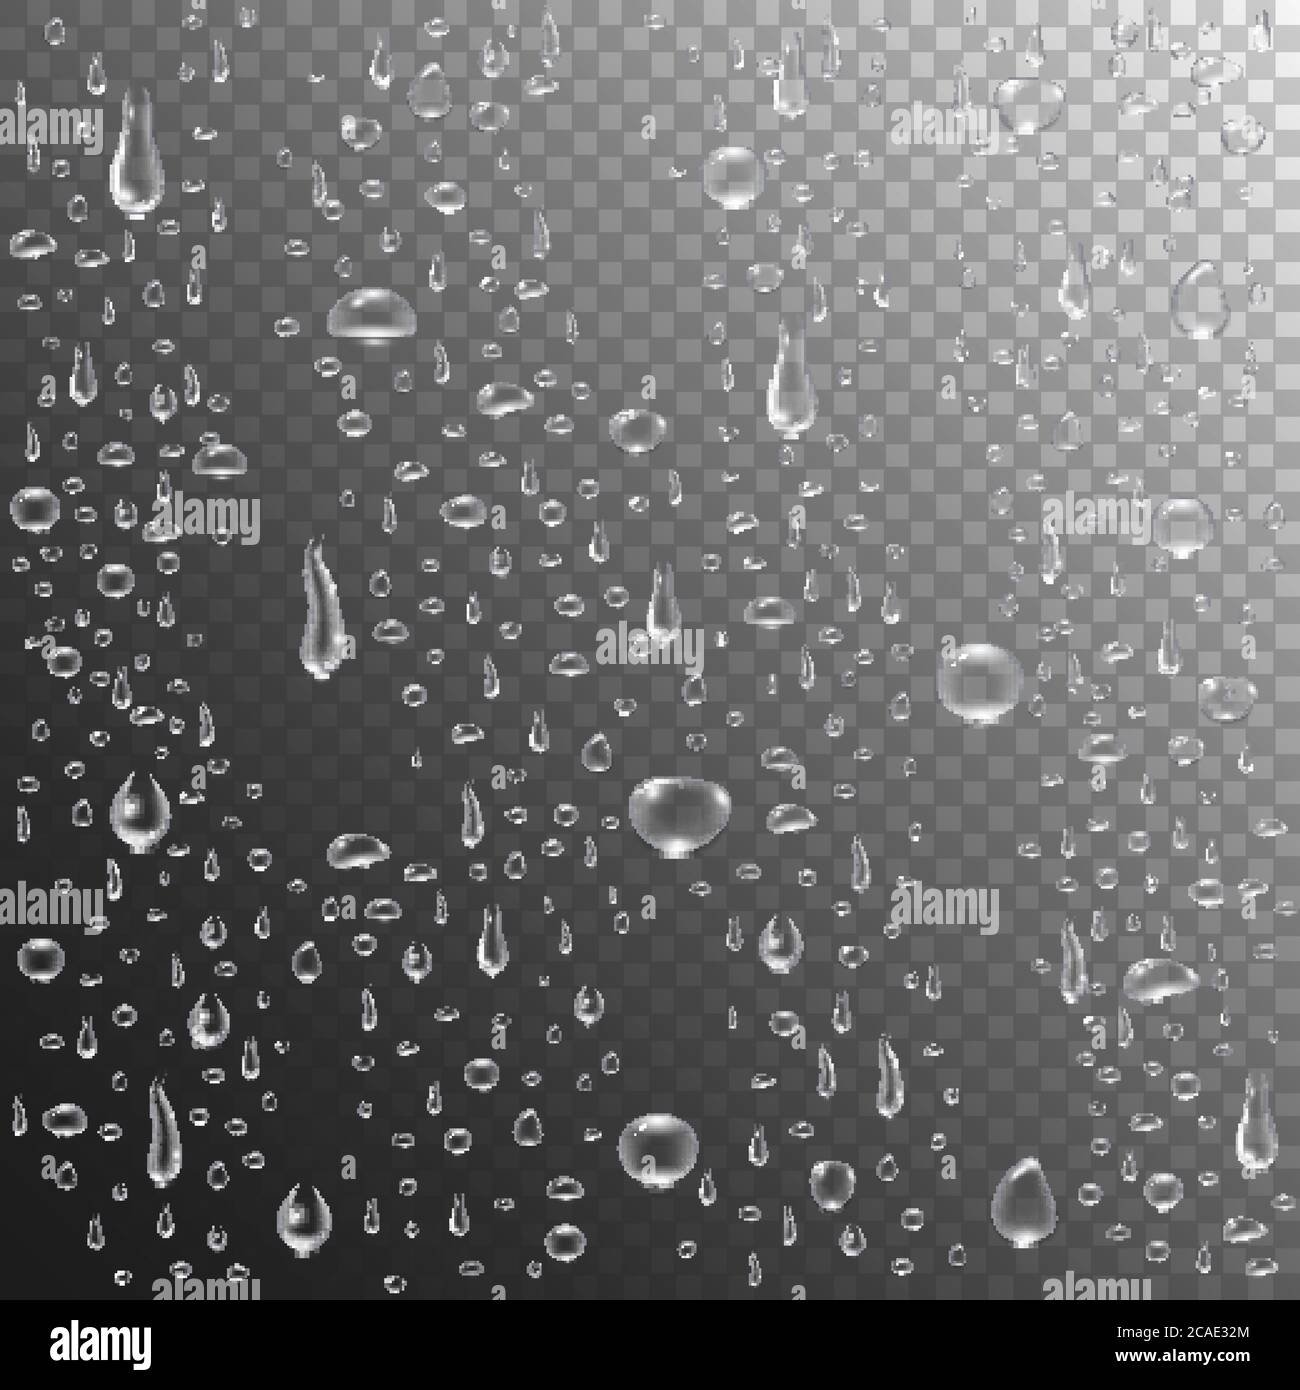 Regentropfen oder Dampfdusche. Realistische Wassertropfen auf transparentem Hintergrund. Klare Dampfblasen auf der Glasfläche des Fensters. Verdichtete reine Tröpfchen. Vec Stock Vektor